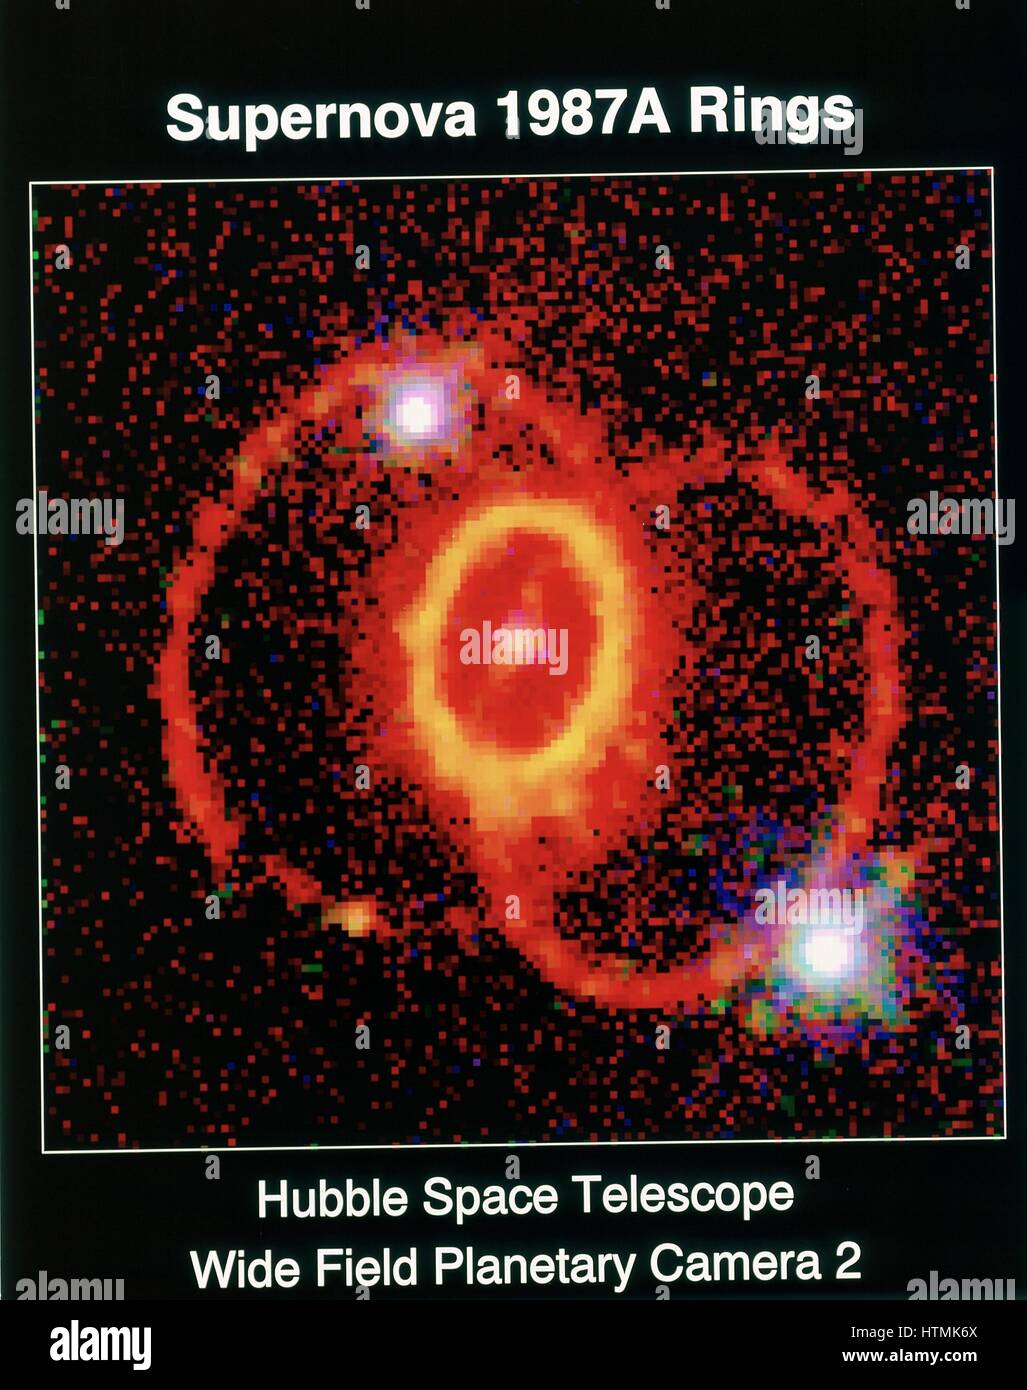 Supernova 19j87A observé avec le télescope spatial Hubble, à large champ du télescope planétaire 2. Photographie de la NASA. Banque D'Images